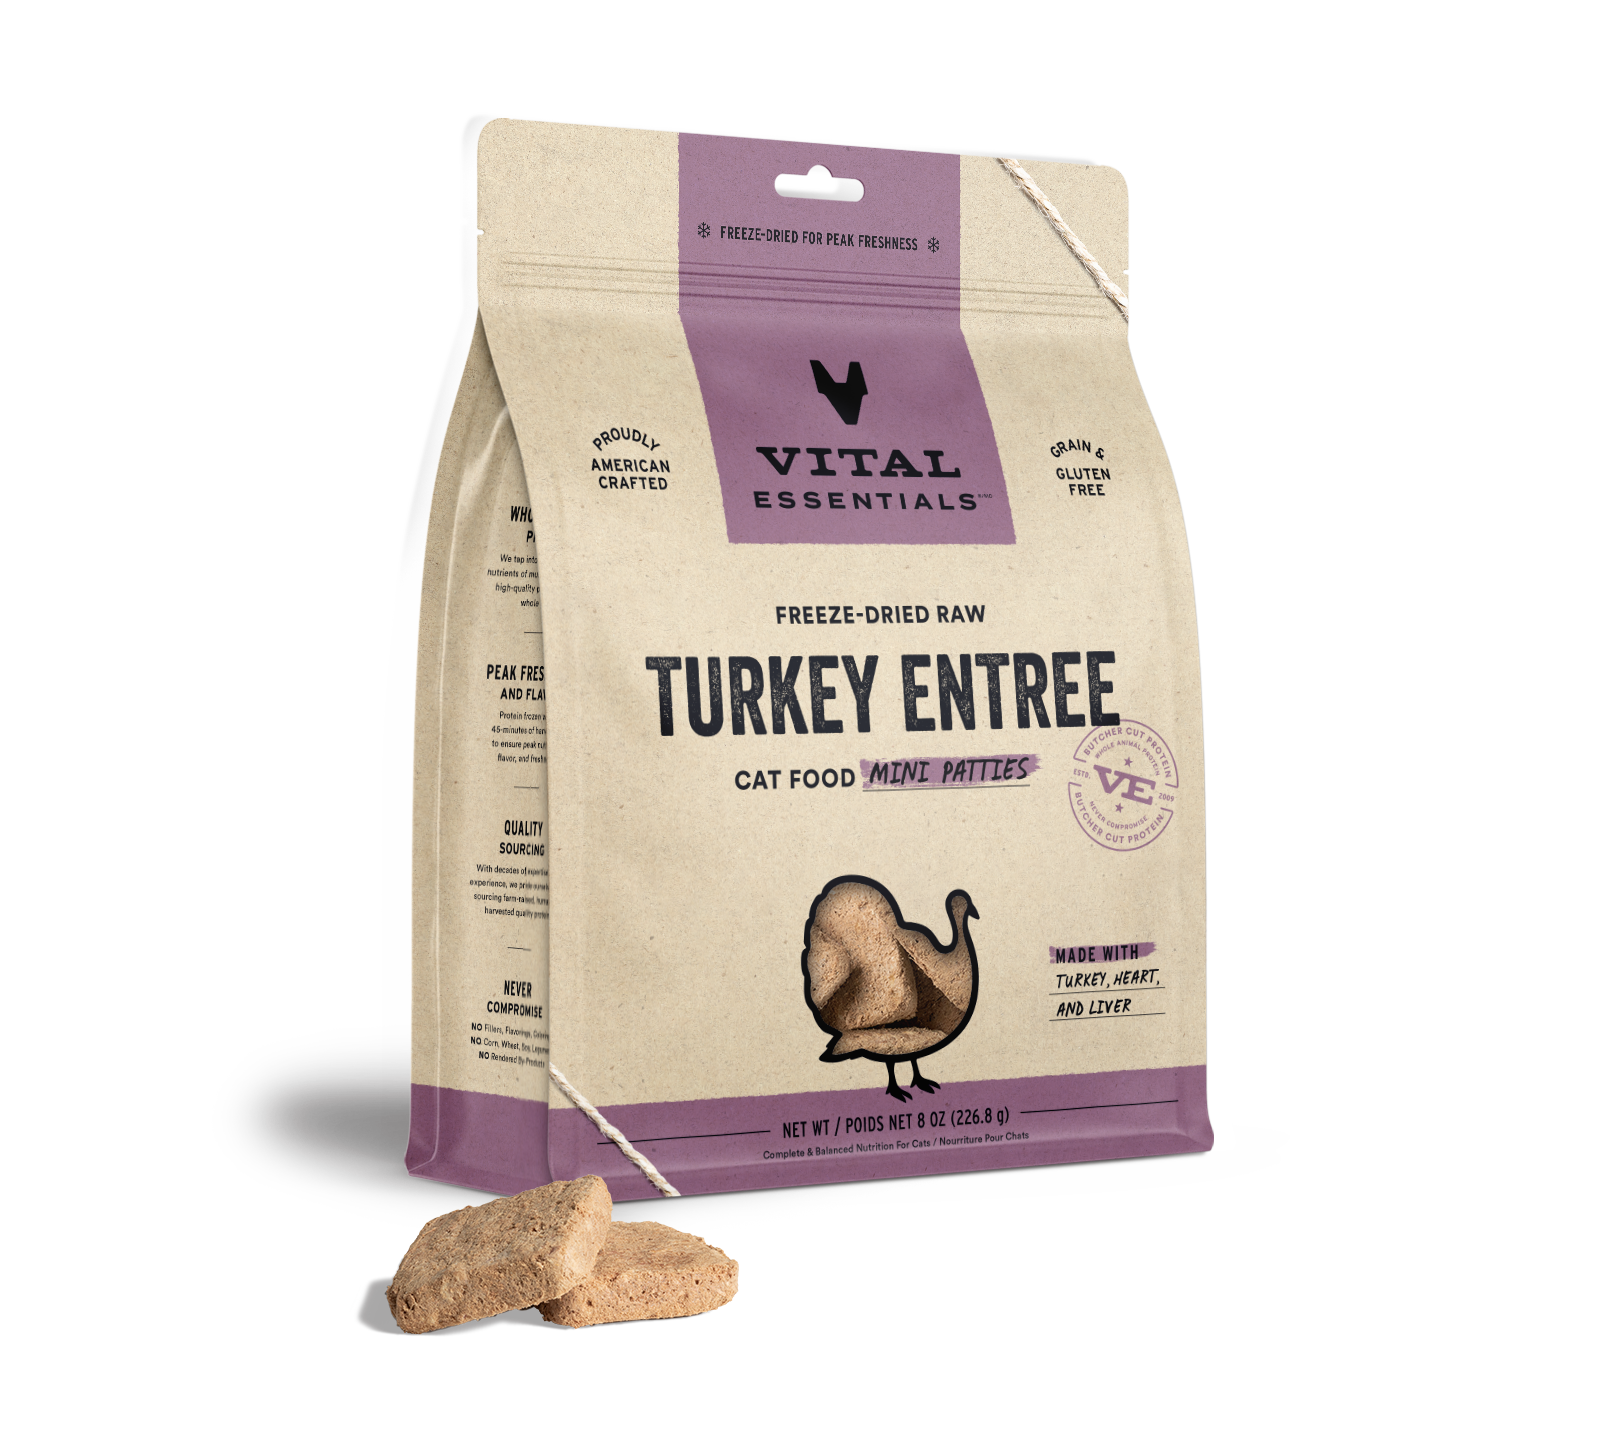 Vital Essentials Freeze-Dried Raw Turkey Entree Cat Food Mini Patties, 8 oz - Healing/First Aid